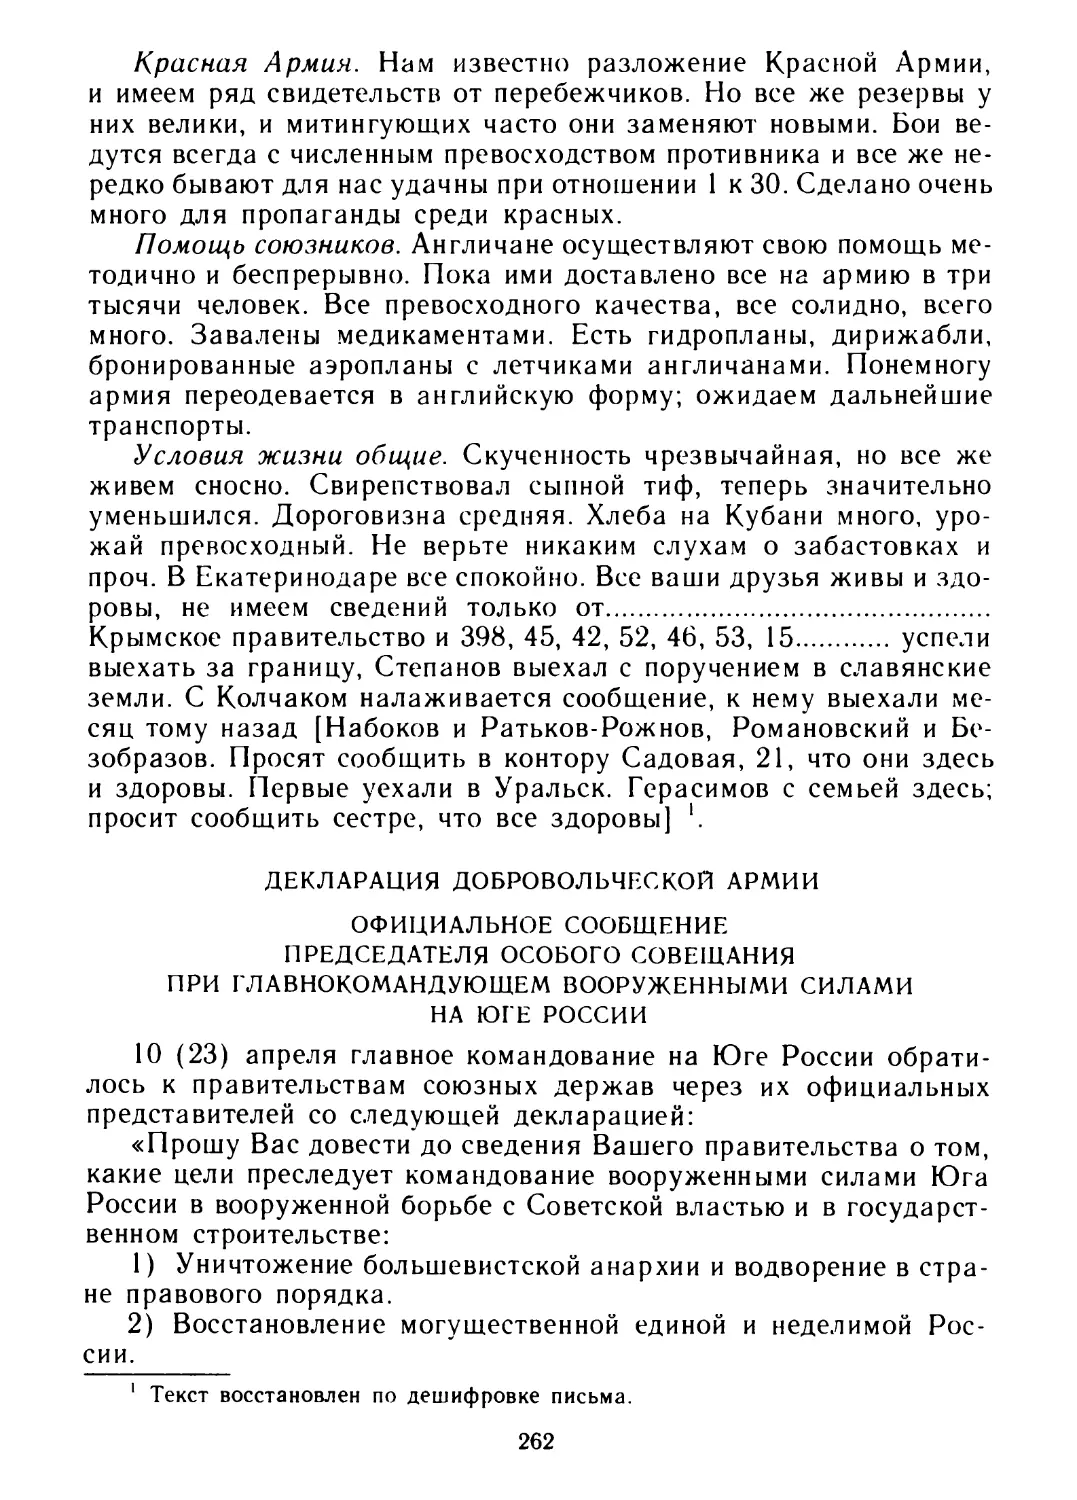 Декларация Добровольческой армии